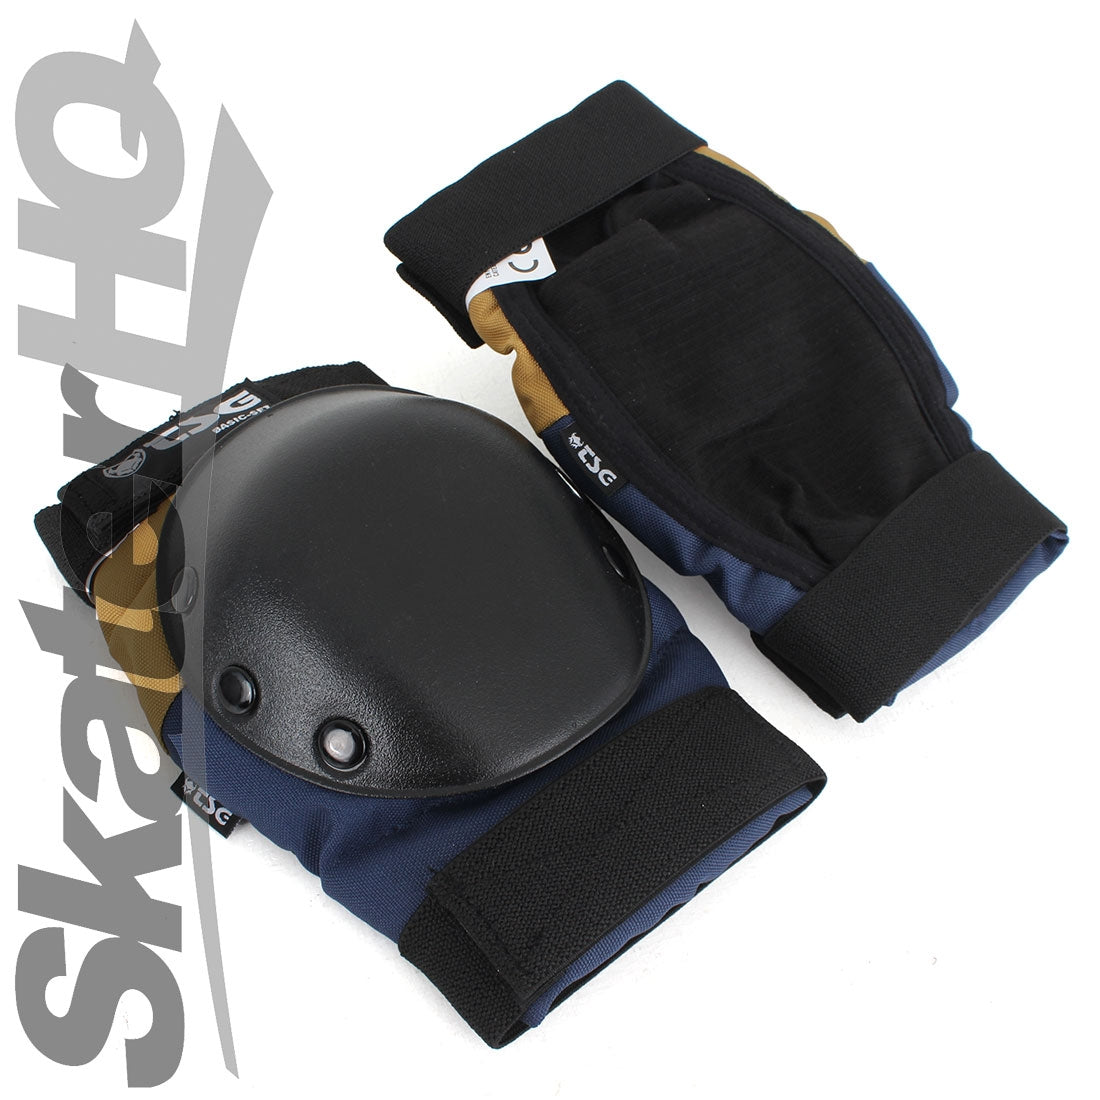 TSG Basic Skate Set Navy/Tan - Medium Protective Gear